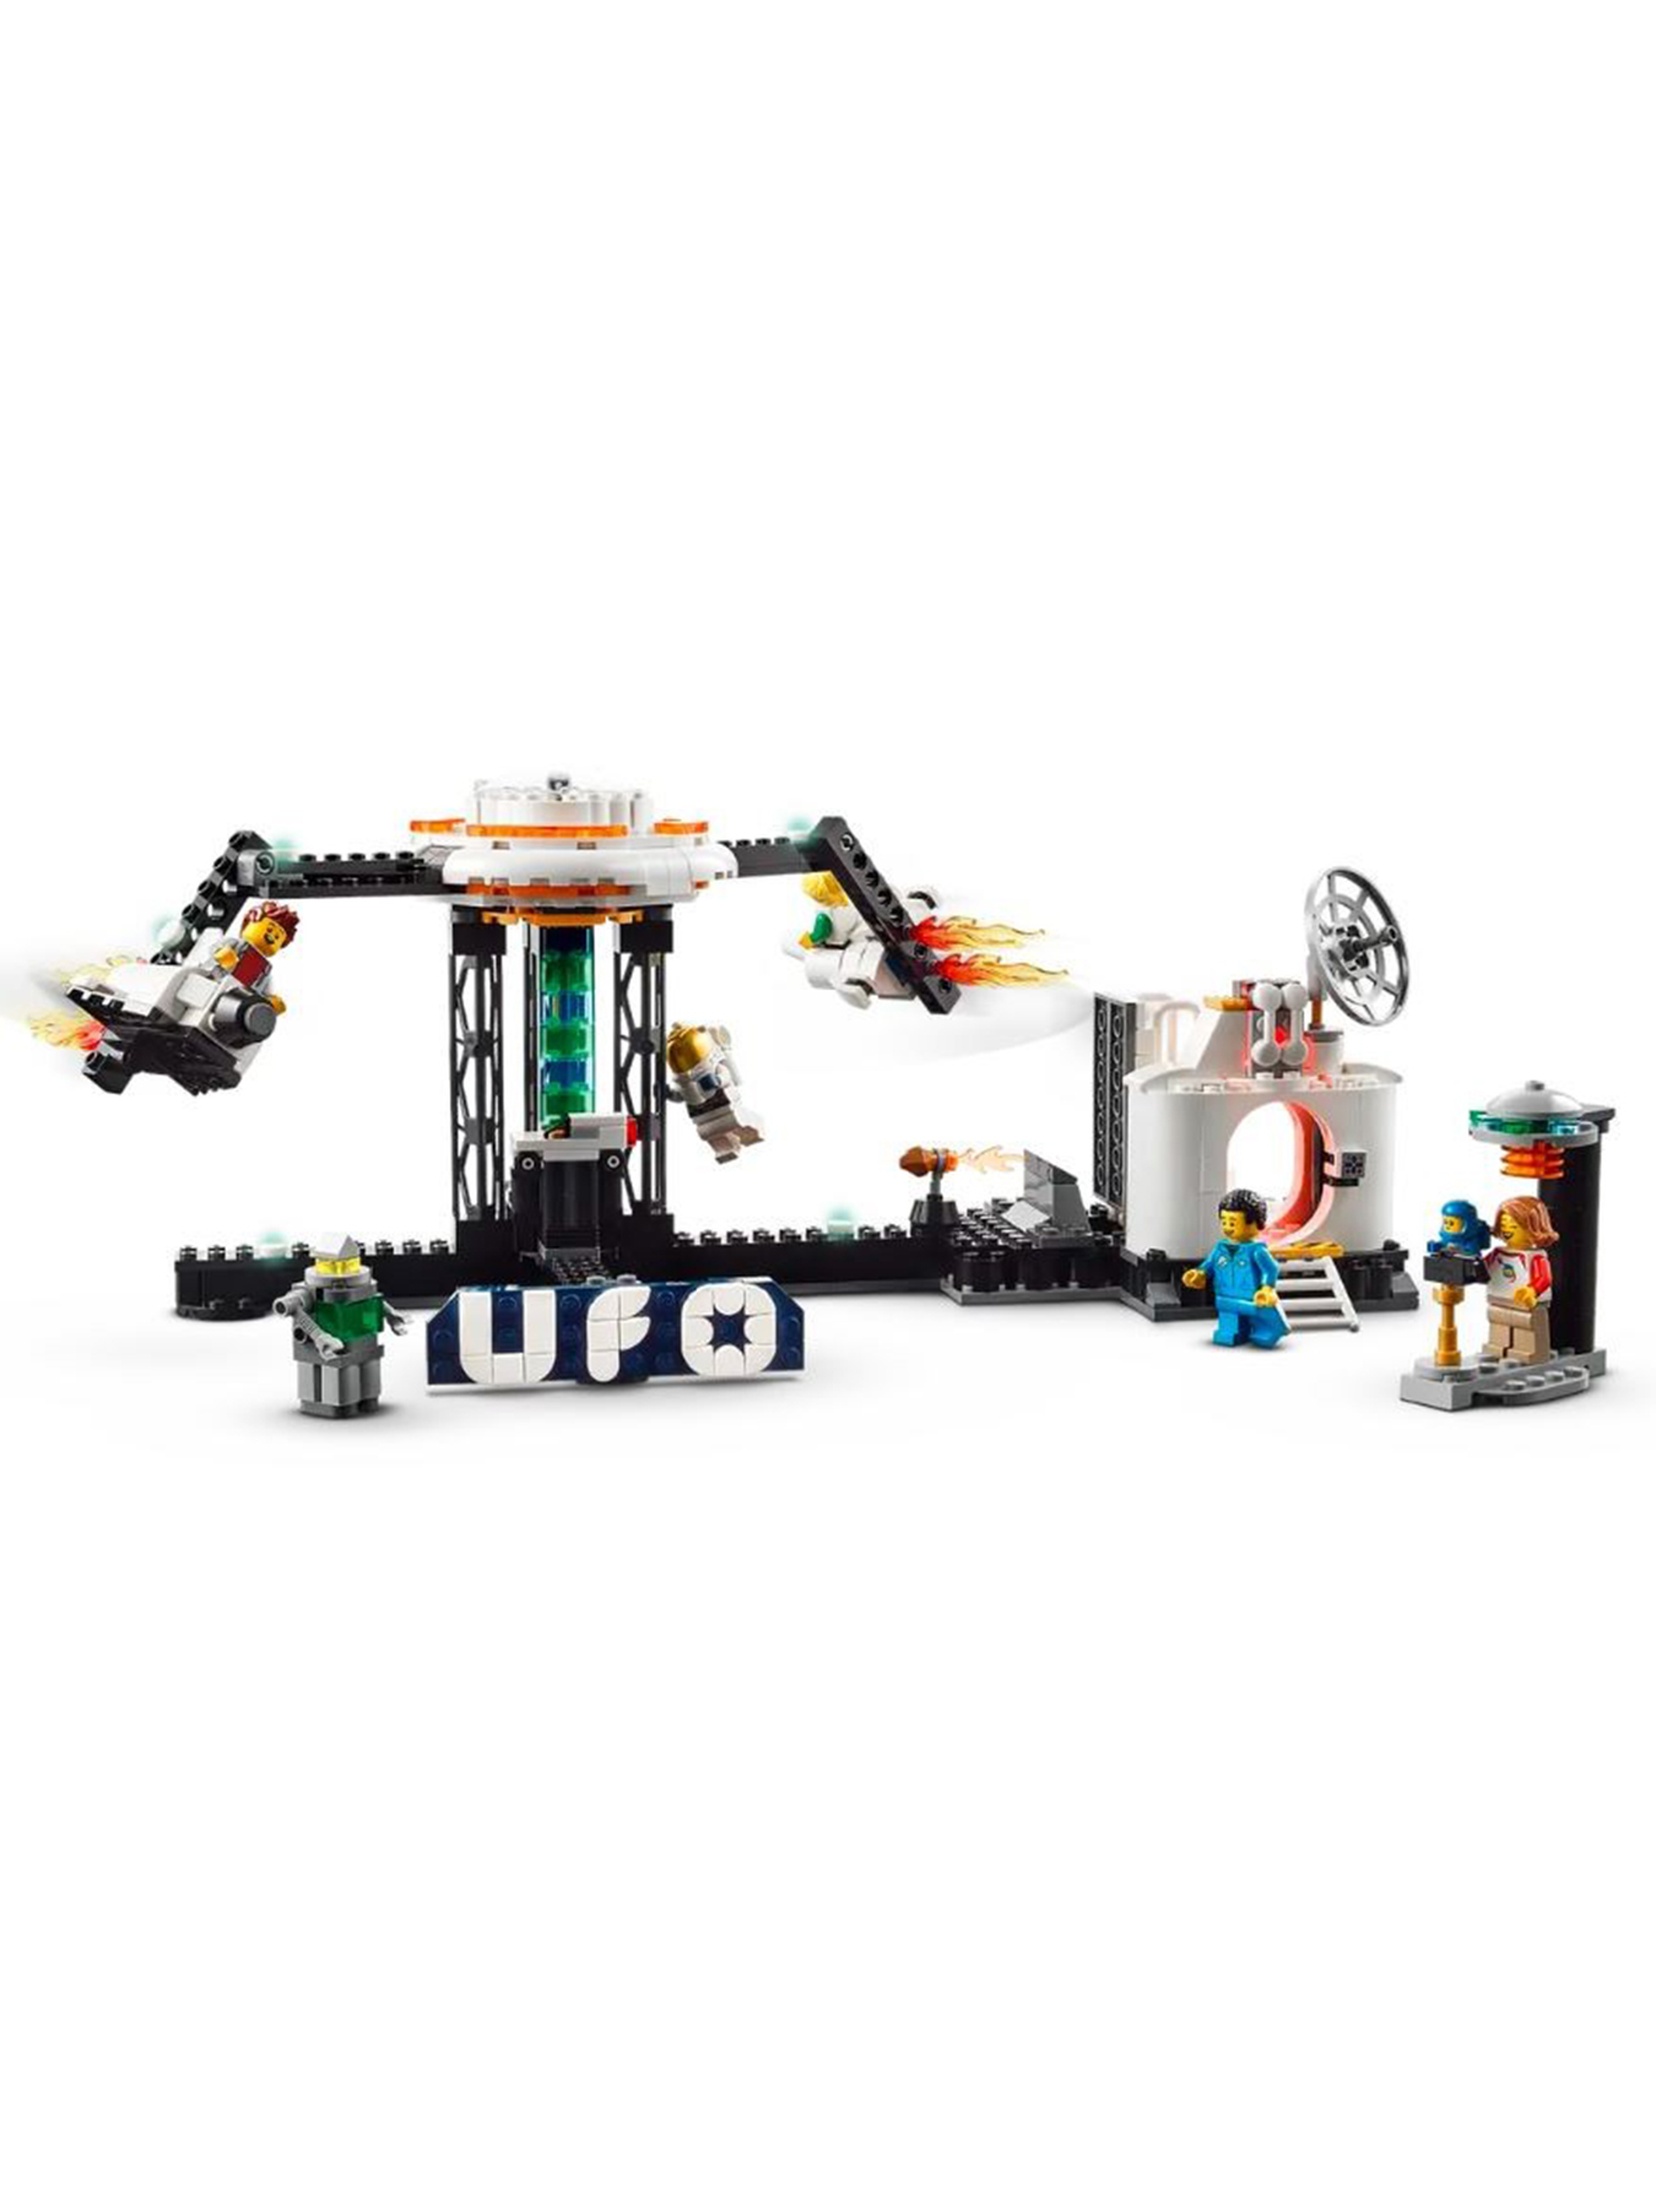 Klocki LEGO Creator 31142 Kosmiczna kolejka górska - 874 elementy, wiek 9 +